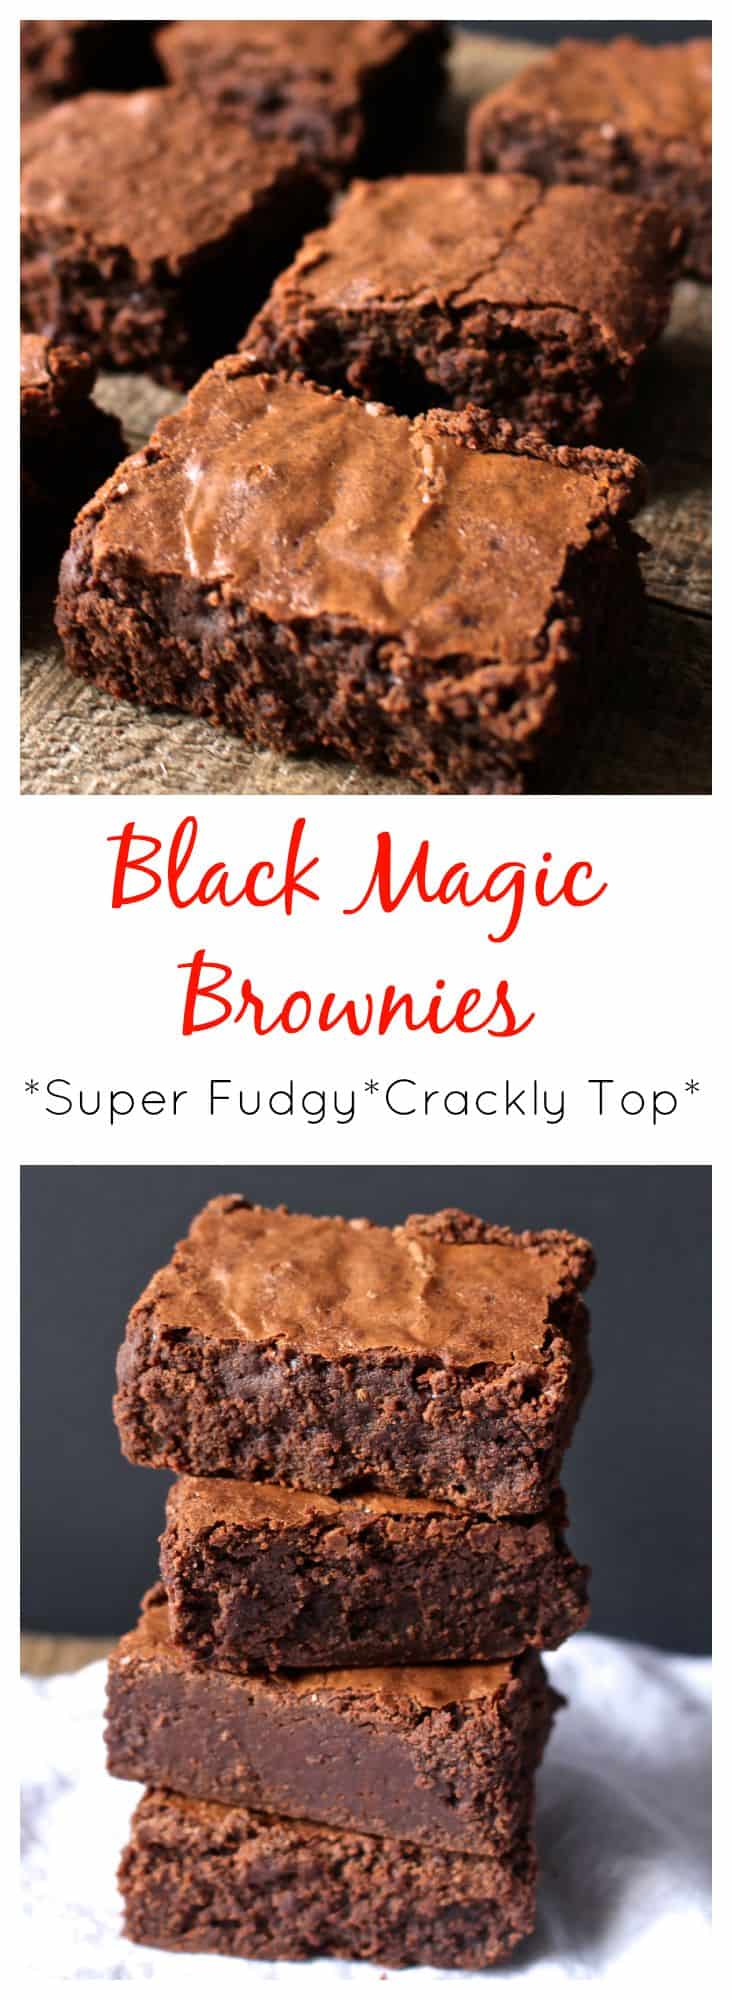 Black Magic Brownies